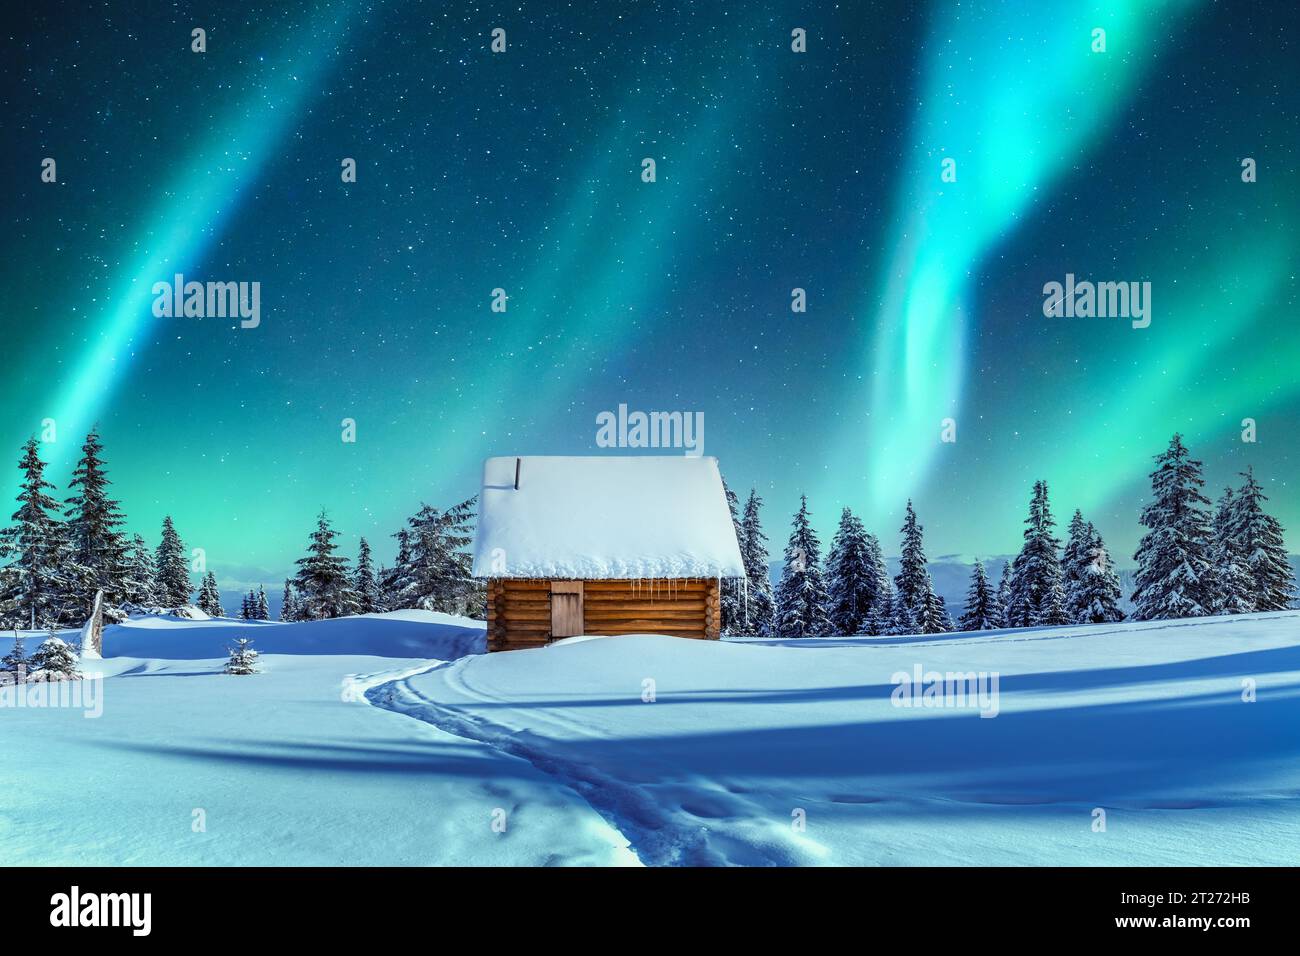 Un pittoresco tableau invernale che presenta un cottage in legno e conifere innevate in montagna. Aurora boreale. Aurora boreale nella foresta invernale. Concetto di vacanze natalizie e vacanze invernali Foto Stock